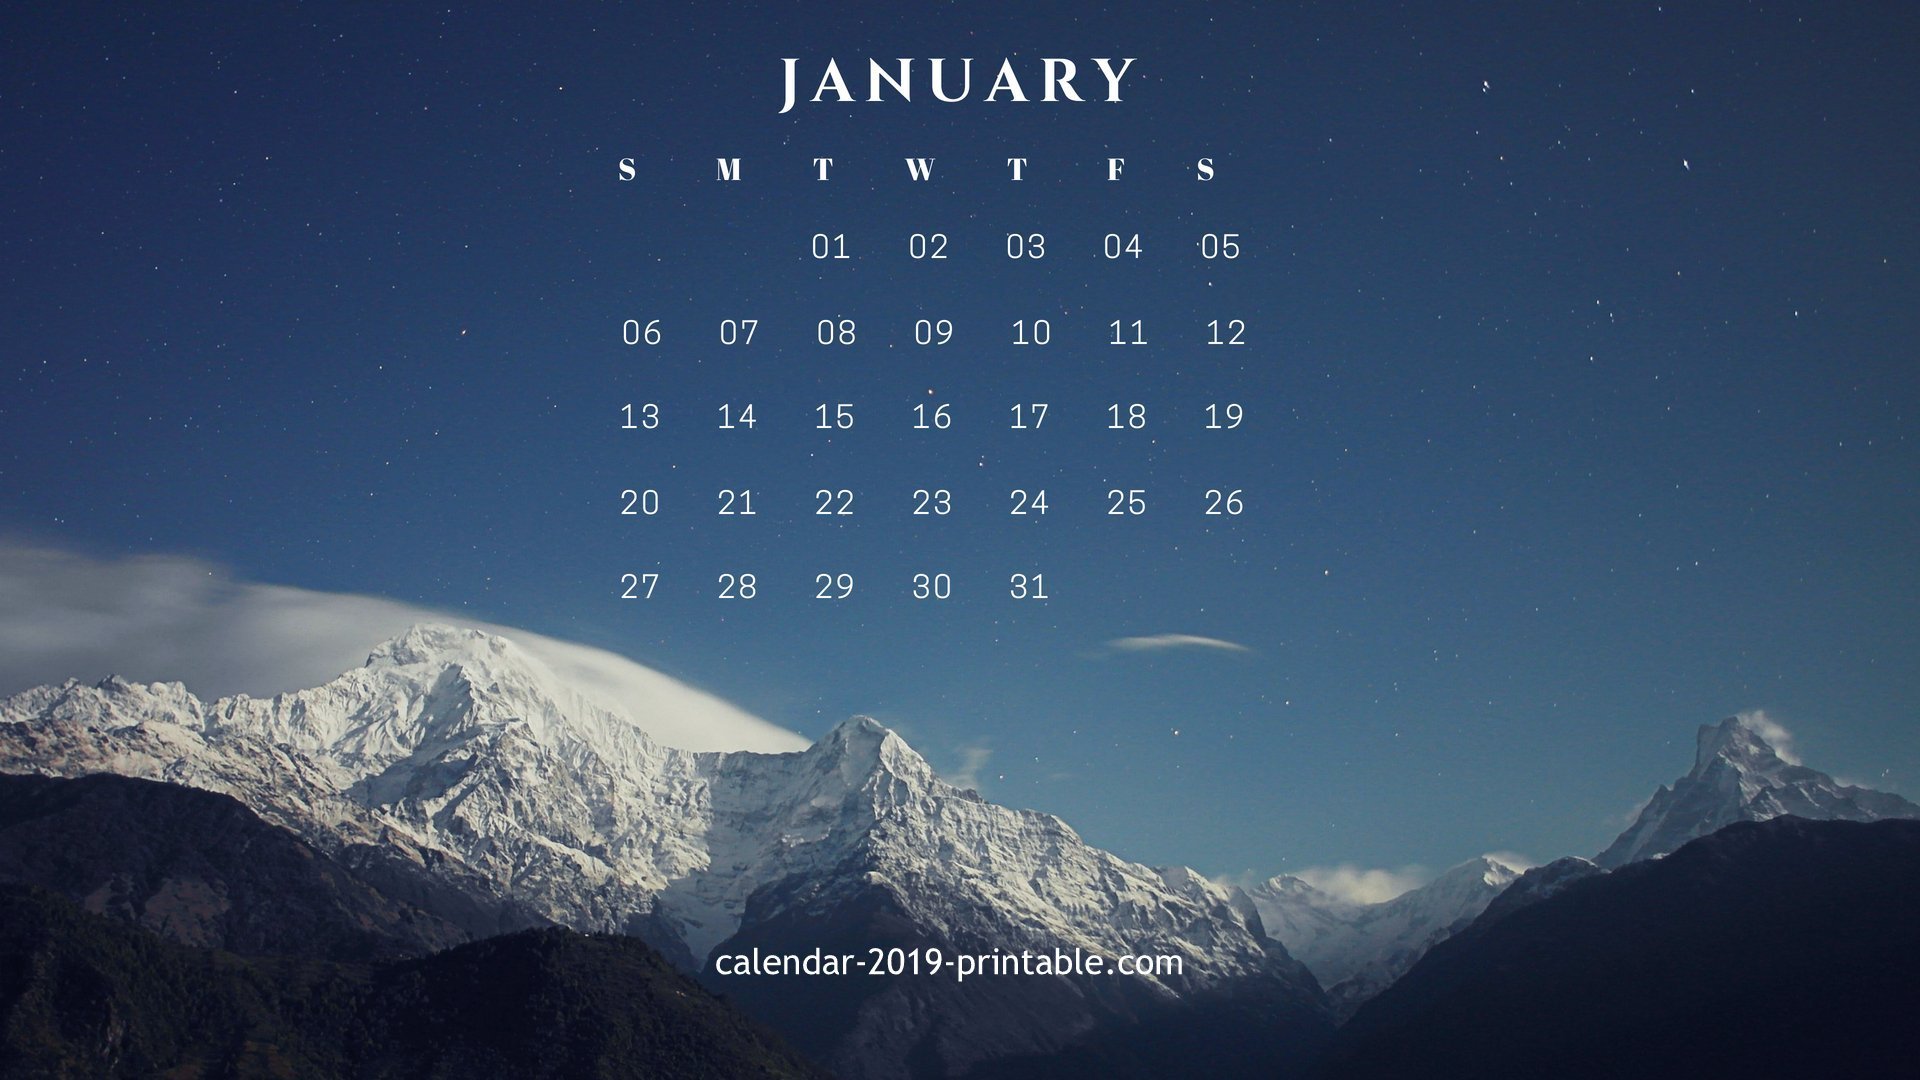 January 2019 Calendar Desktop Wallpapers Calendar 2019 1920x1080